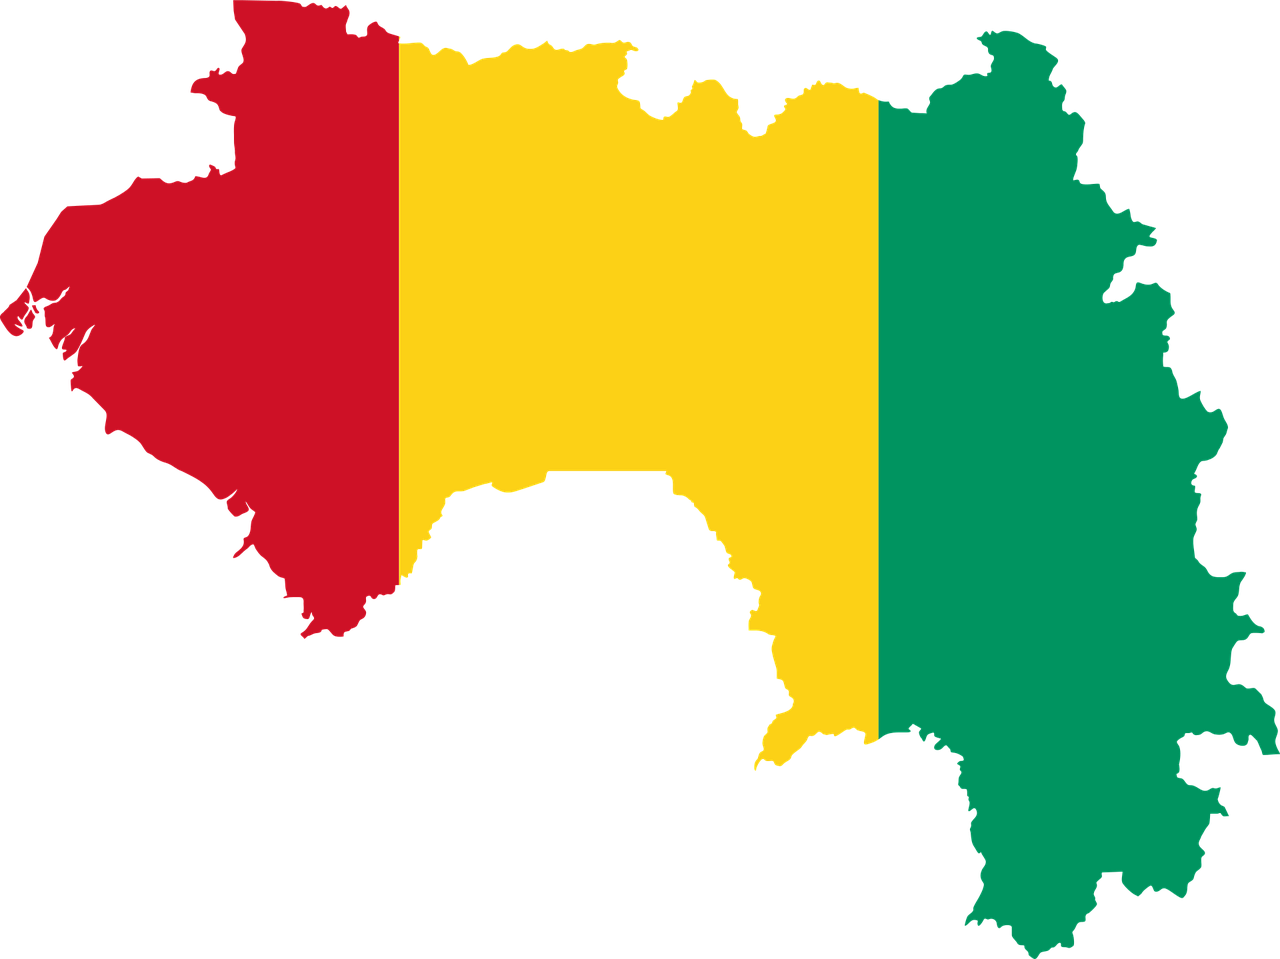 La junta militar de Guinea comienza una ronda de consultas nacionales